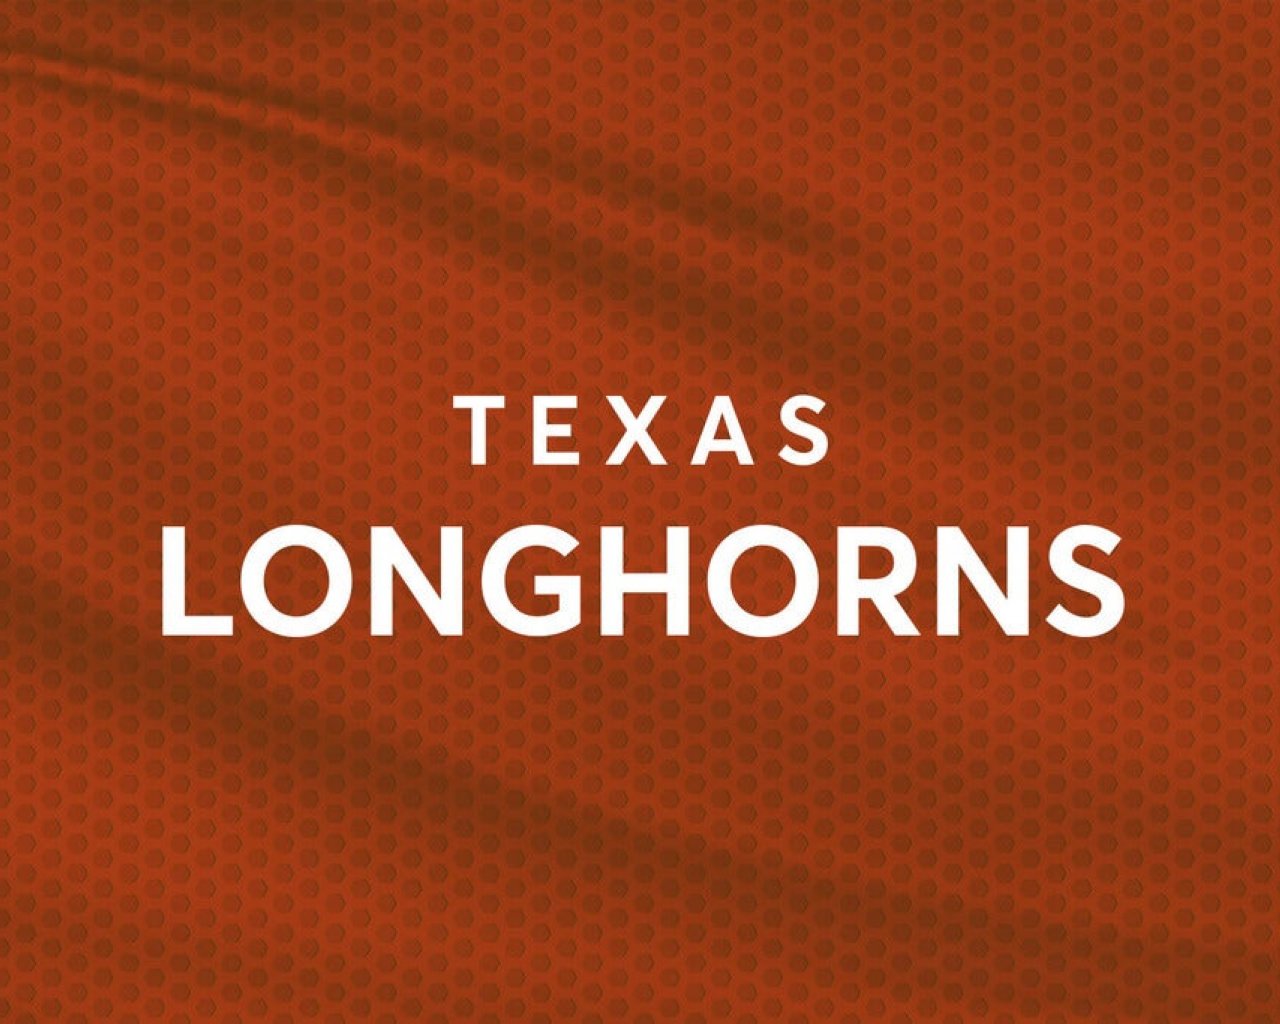 University of Texas Longhorns Men's Basketball